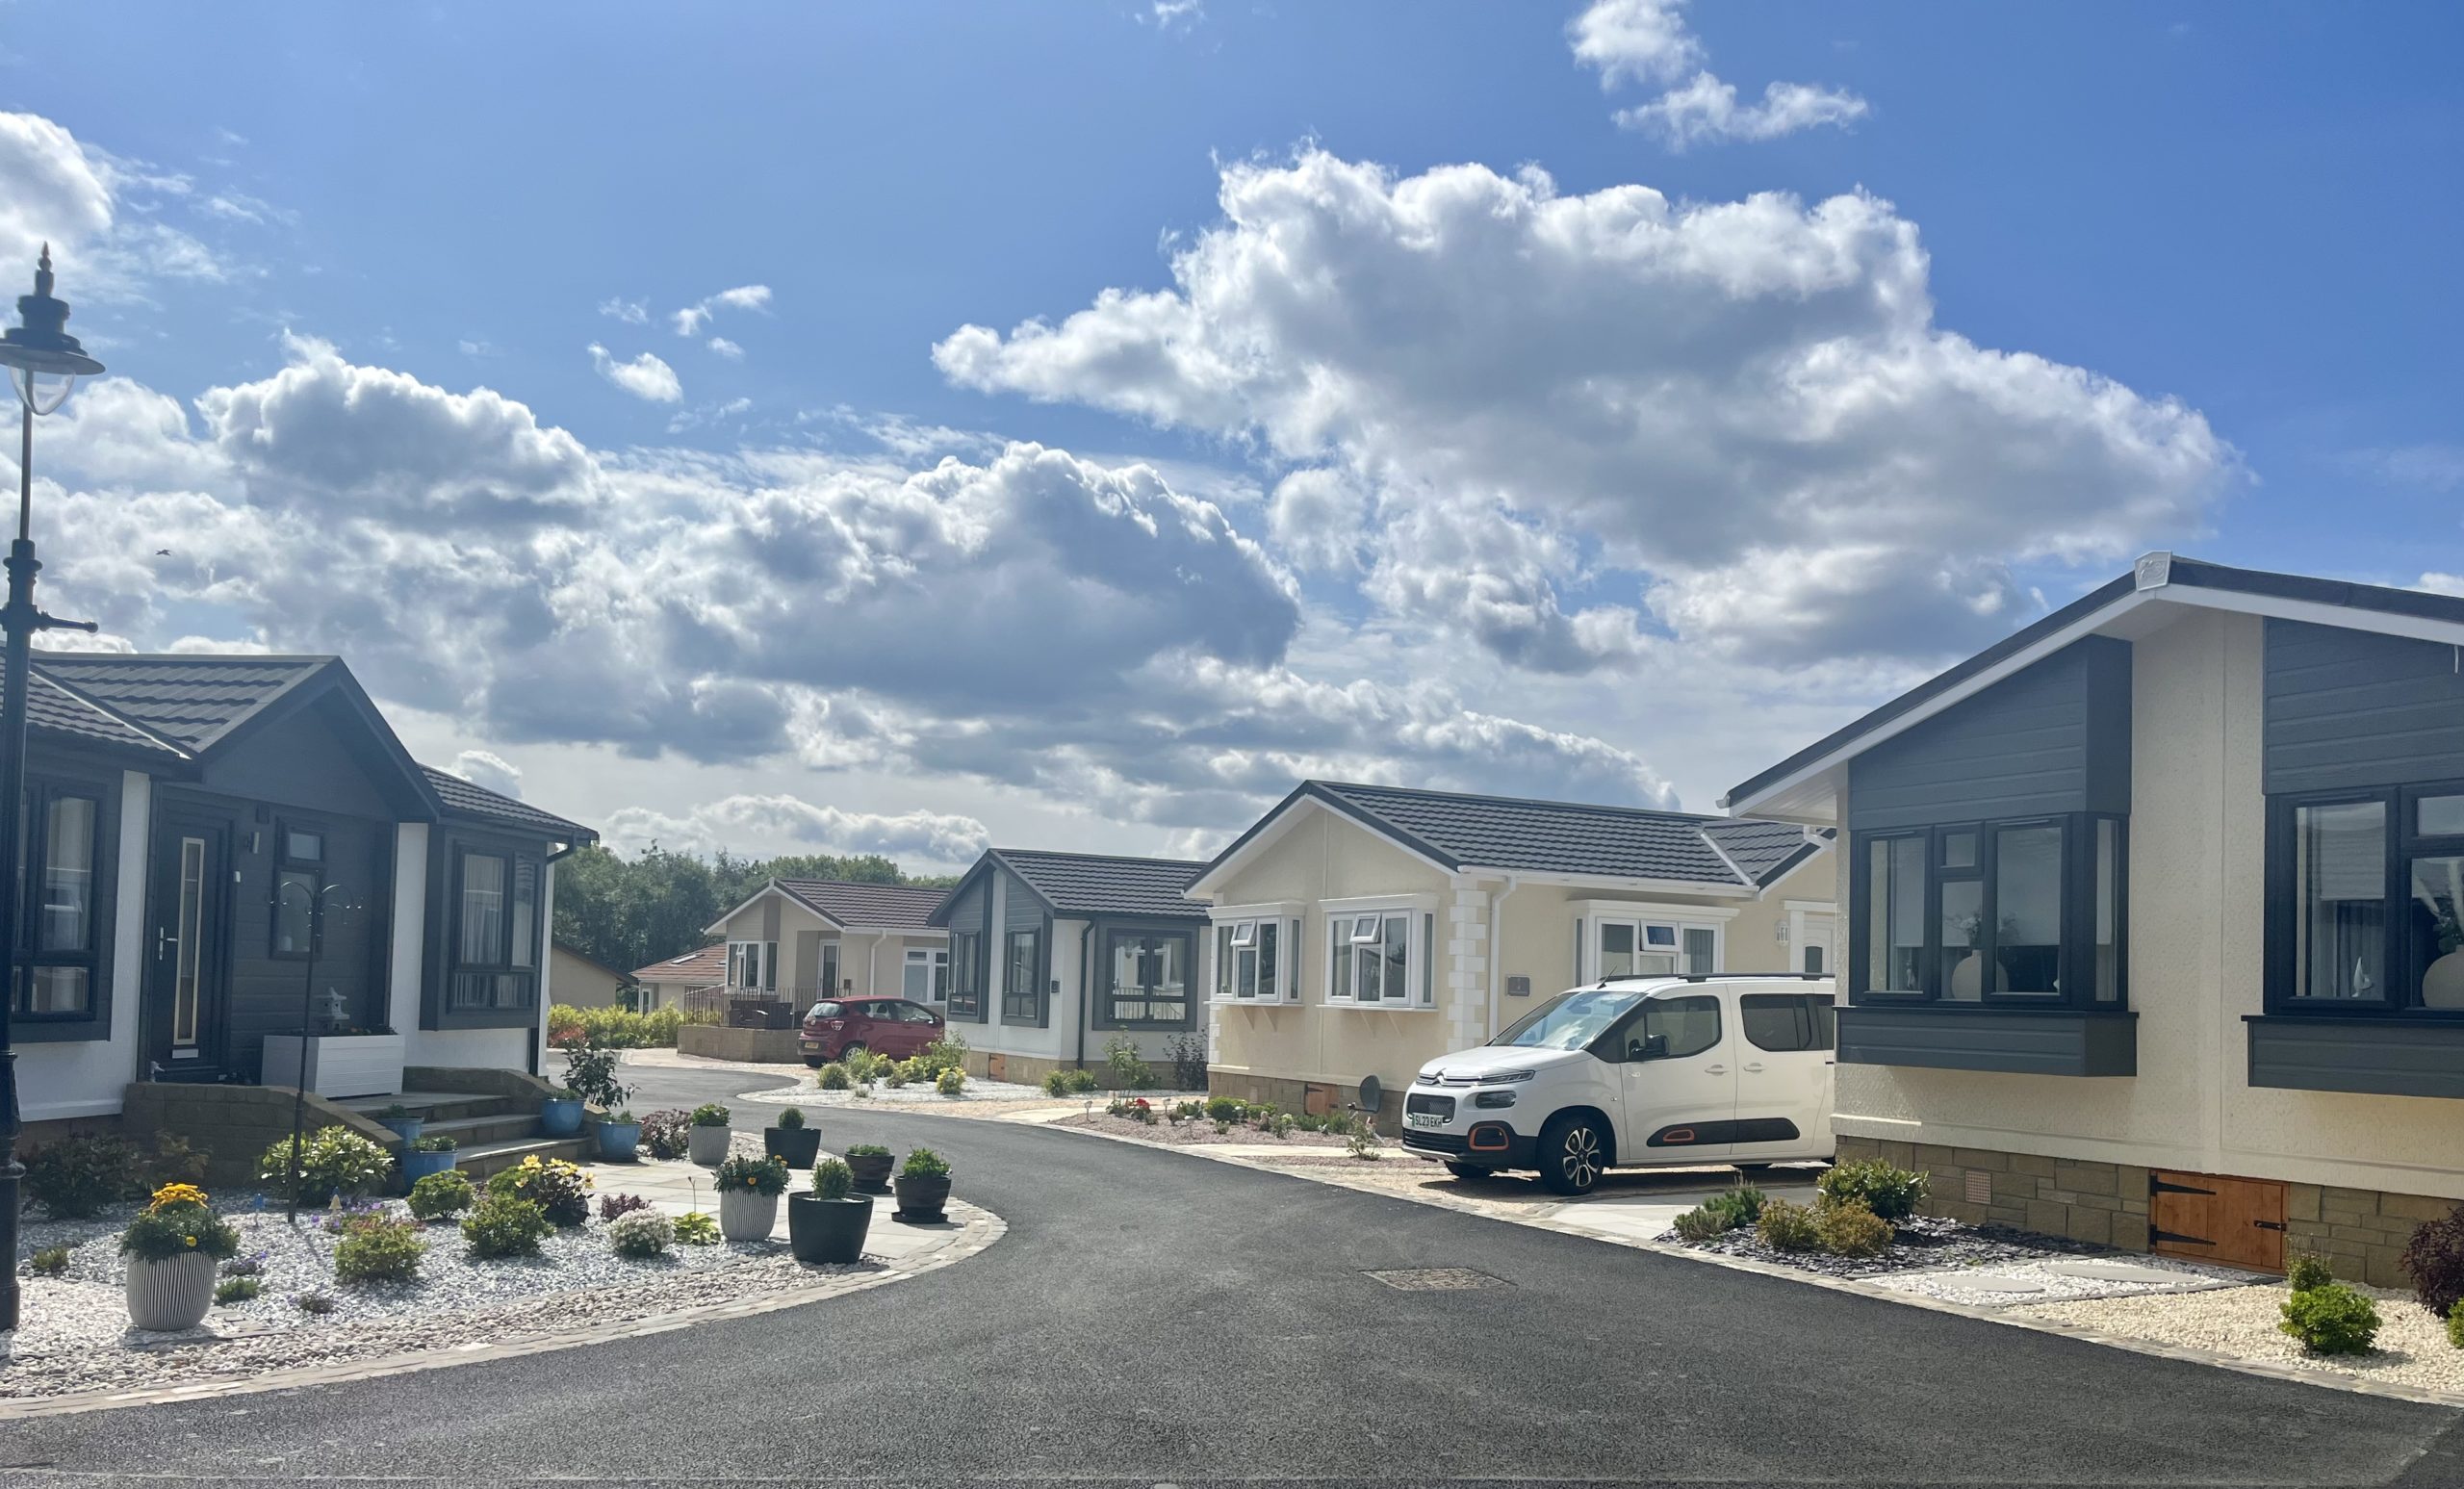 Residential Village in Scotland - phase 4 development underway retirement park homes